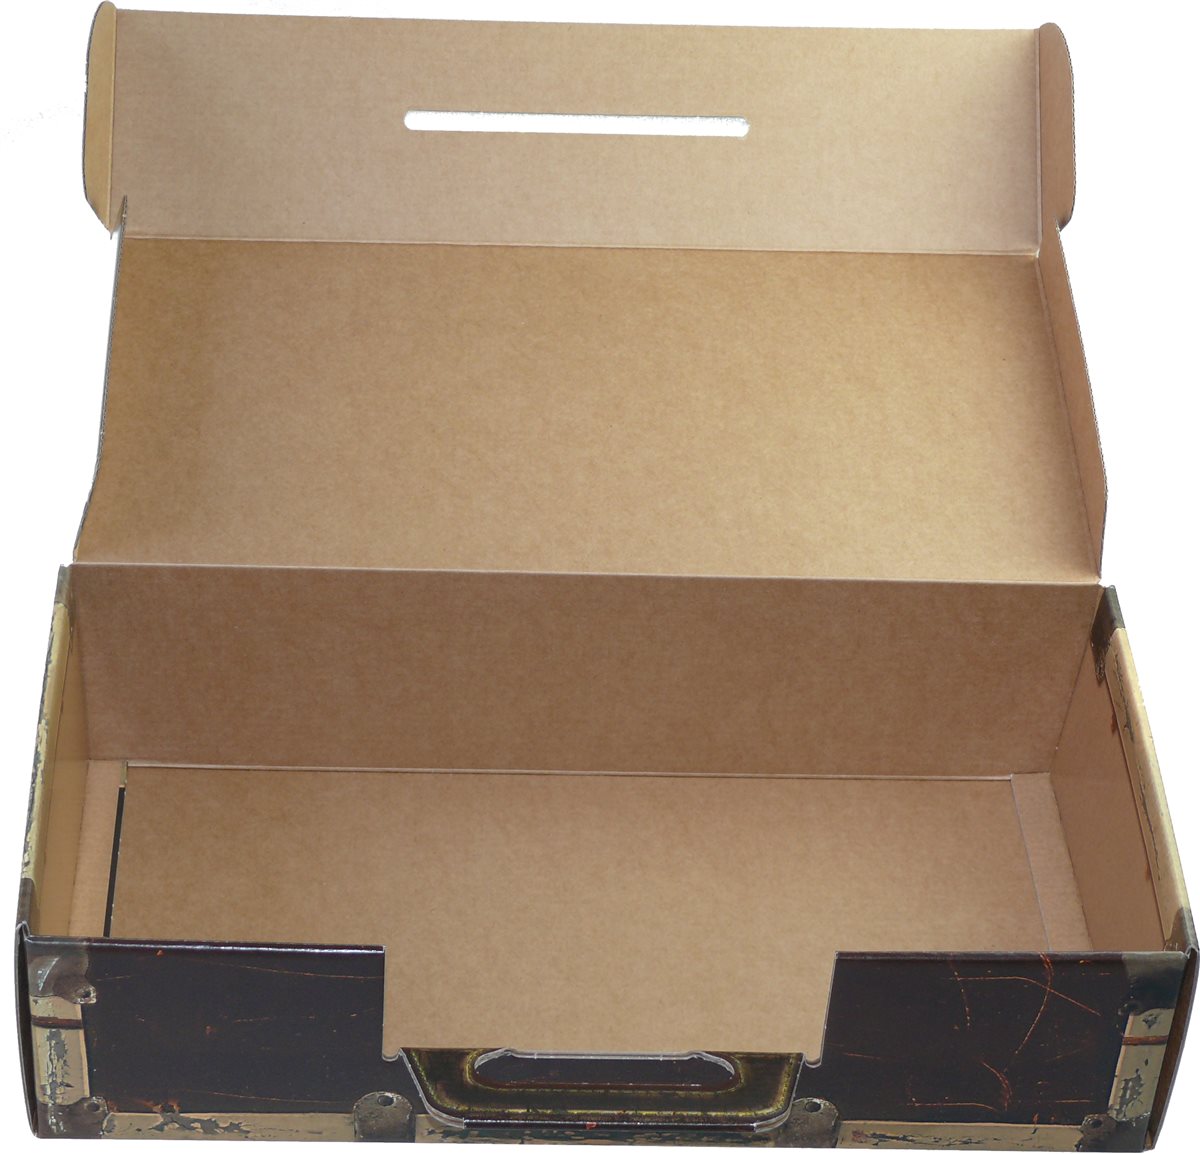 Trage Karton in Holzoptik "Koffer" - WK 2er - Weinkoffer Weinkarton Box Truhe Verpackung Geschenke
